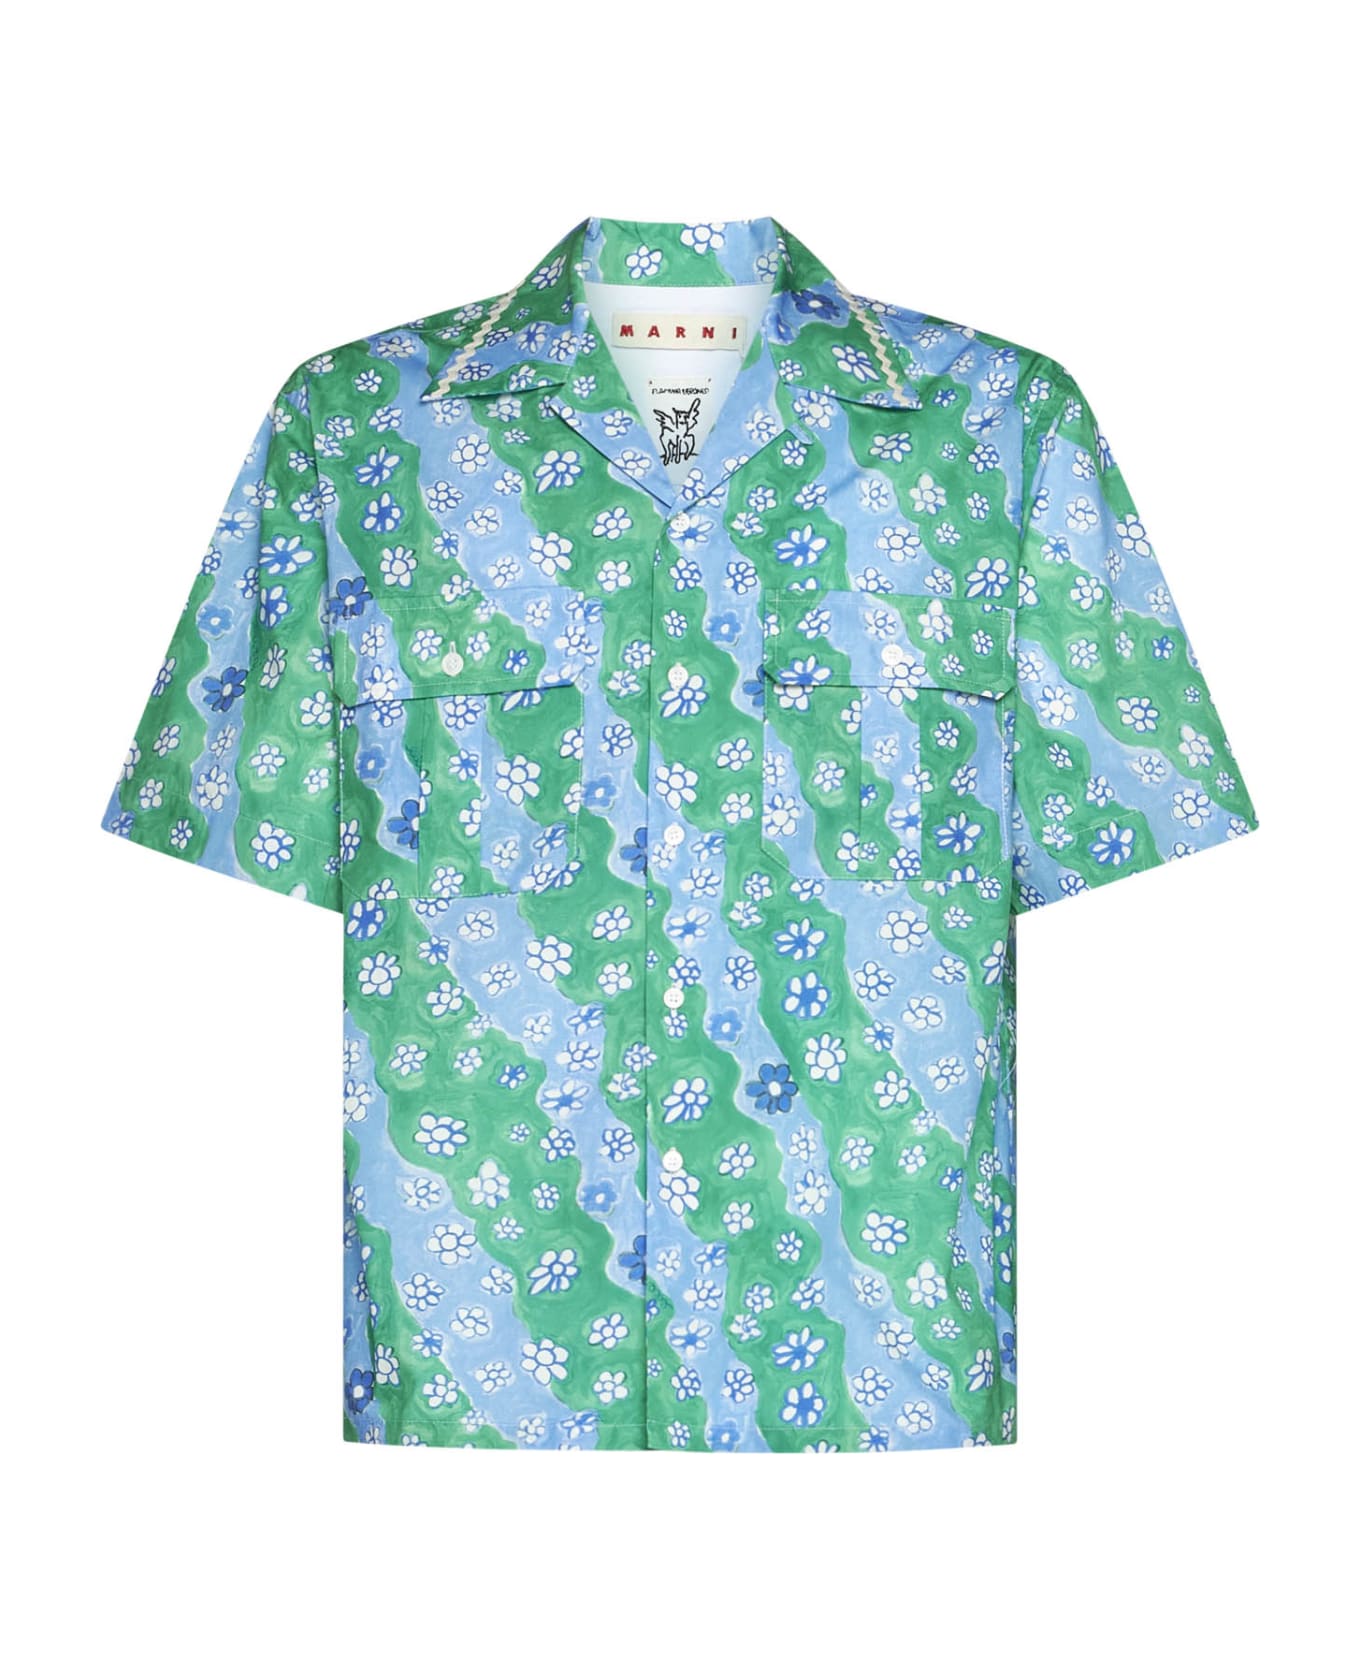 Marni Shirt - Sea green